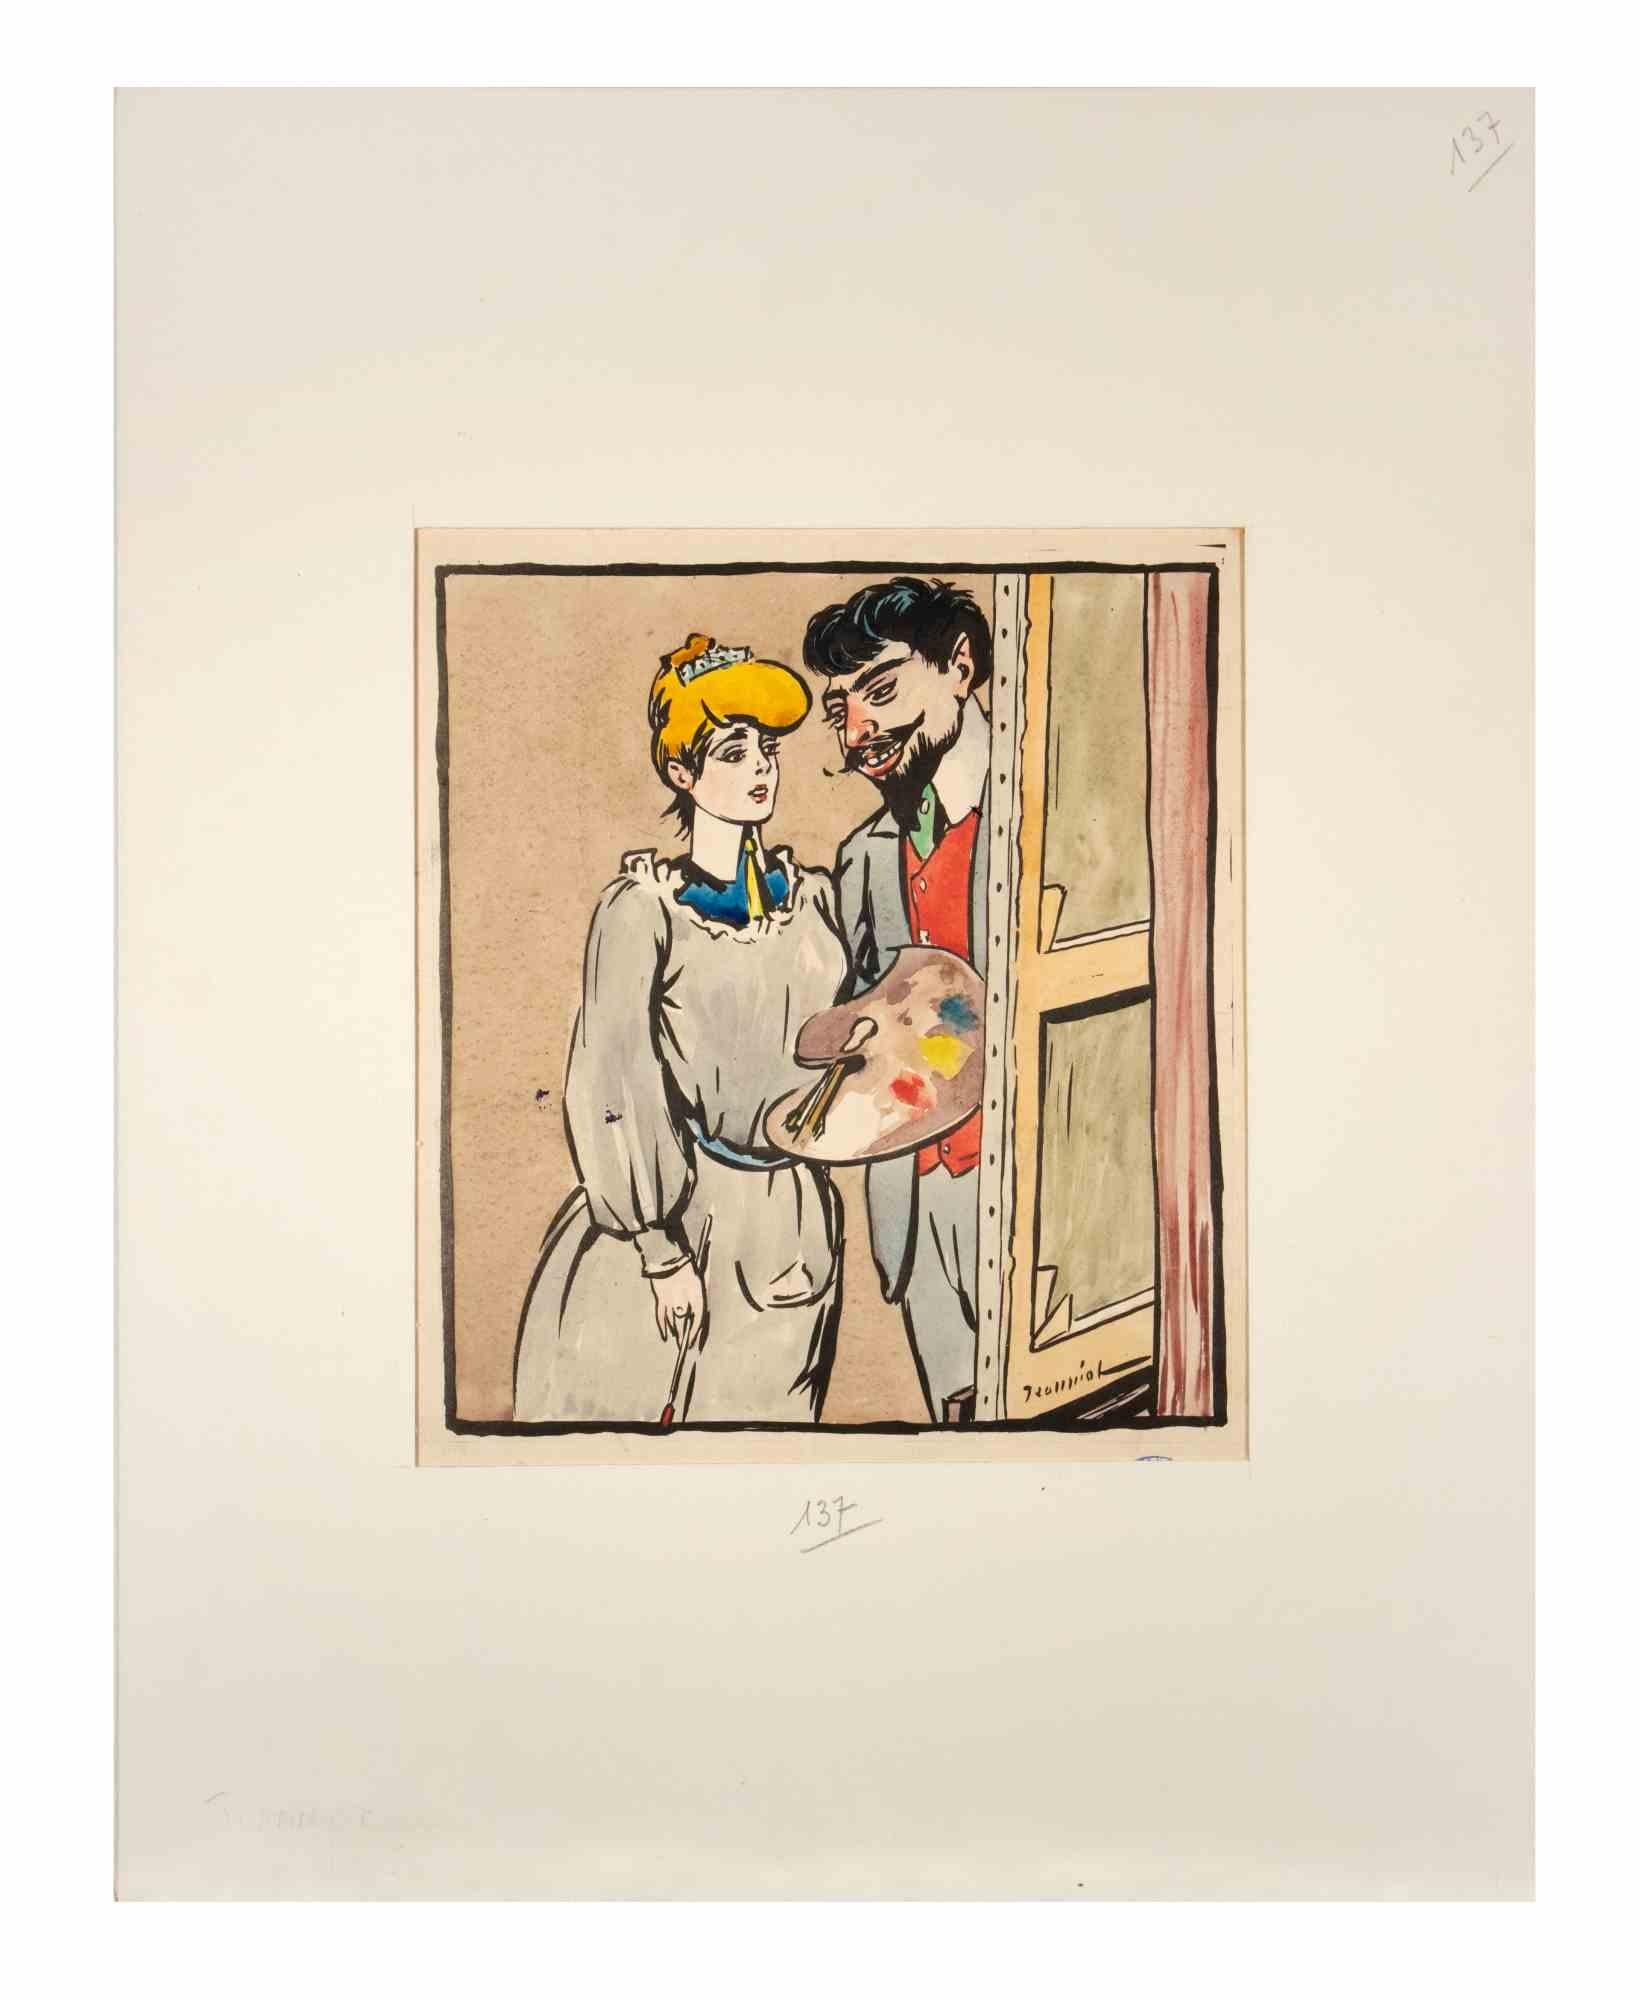 To the Painter ist ein Tusche- und Aquarellbild von Pierre Georges Jeanniot aus dem Jahr 1904, das für die Zeitschrift "Rire" entstand.

Guter Zustand auf vergilbtem Papier.

Stempel signiert in der unteren rechten Ecke.

Dazu gehört ein